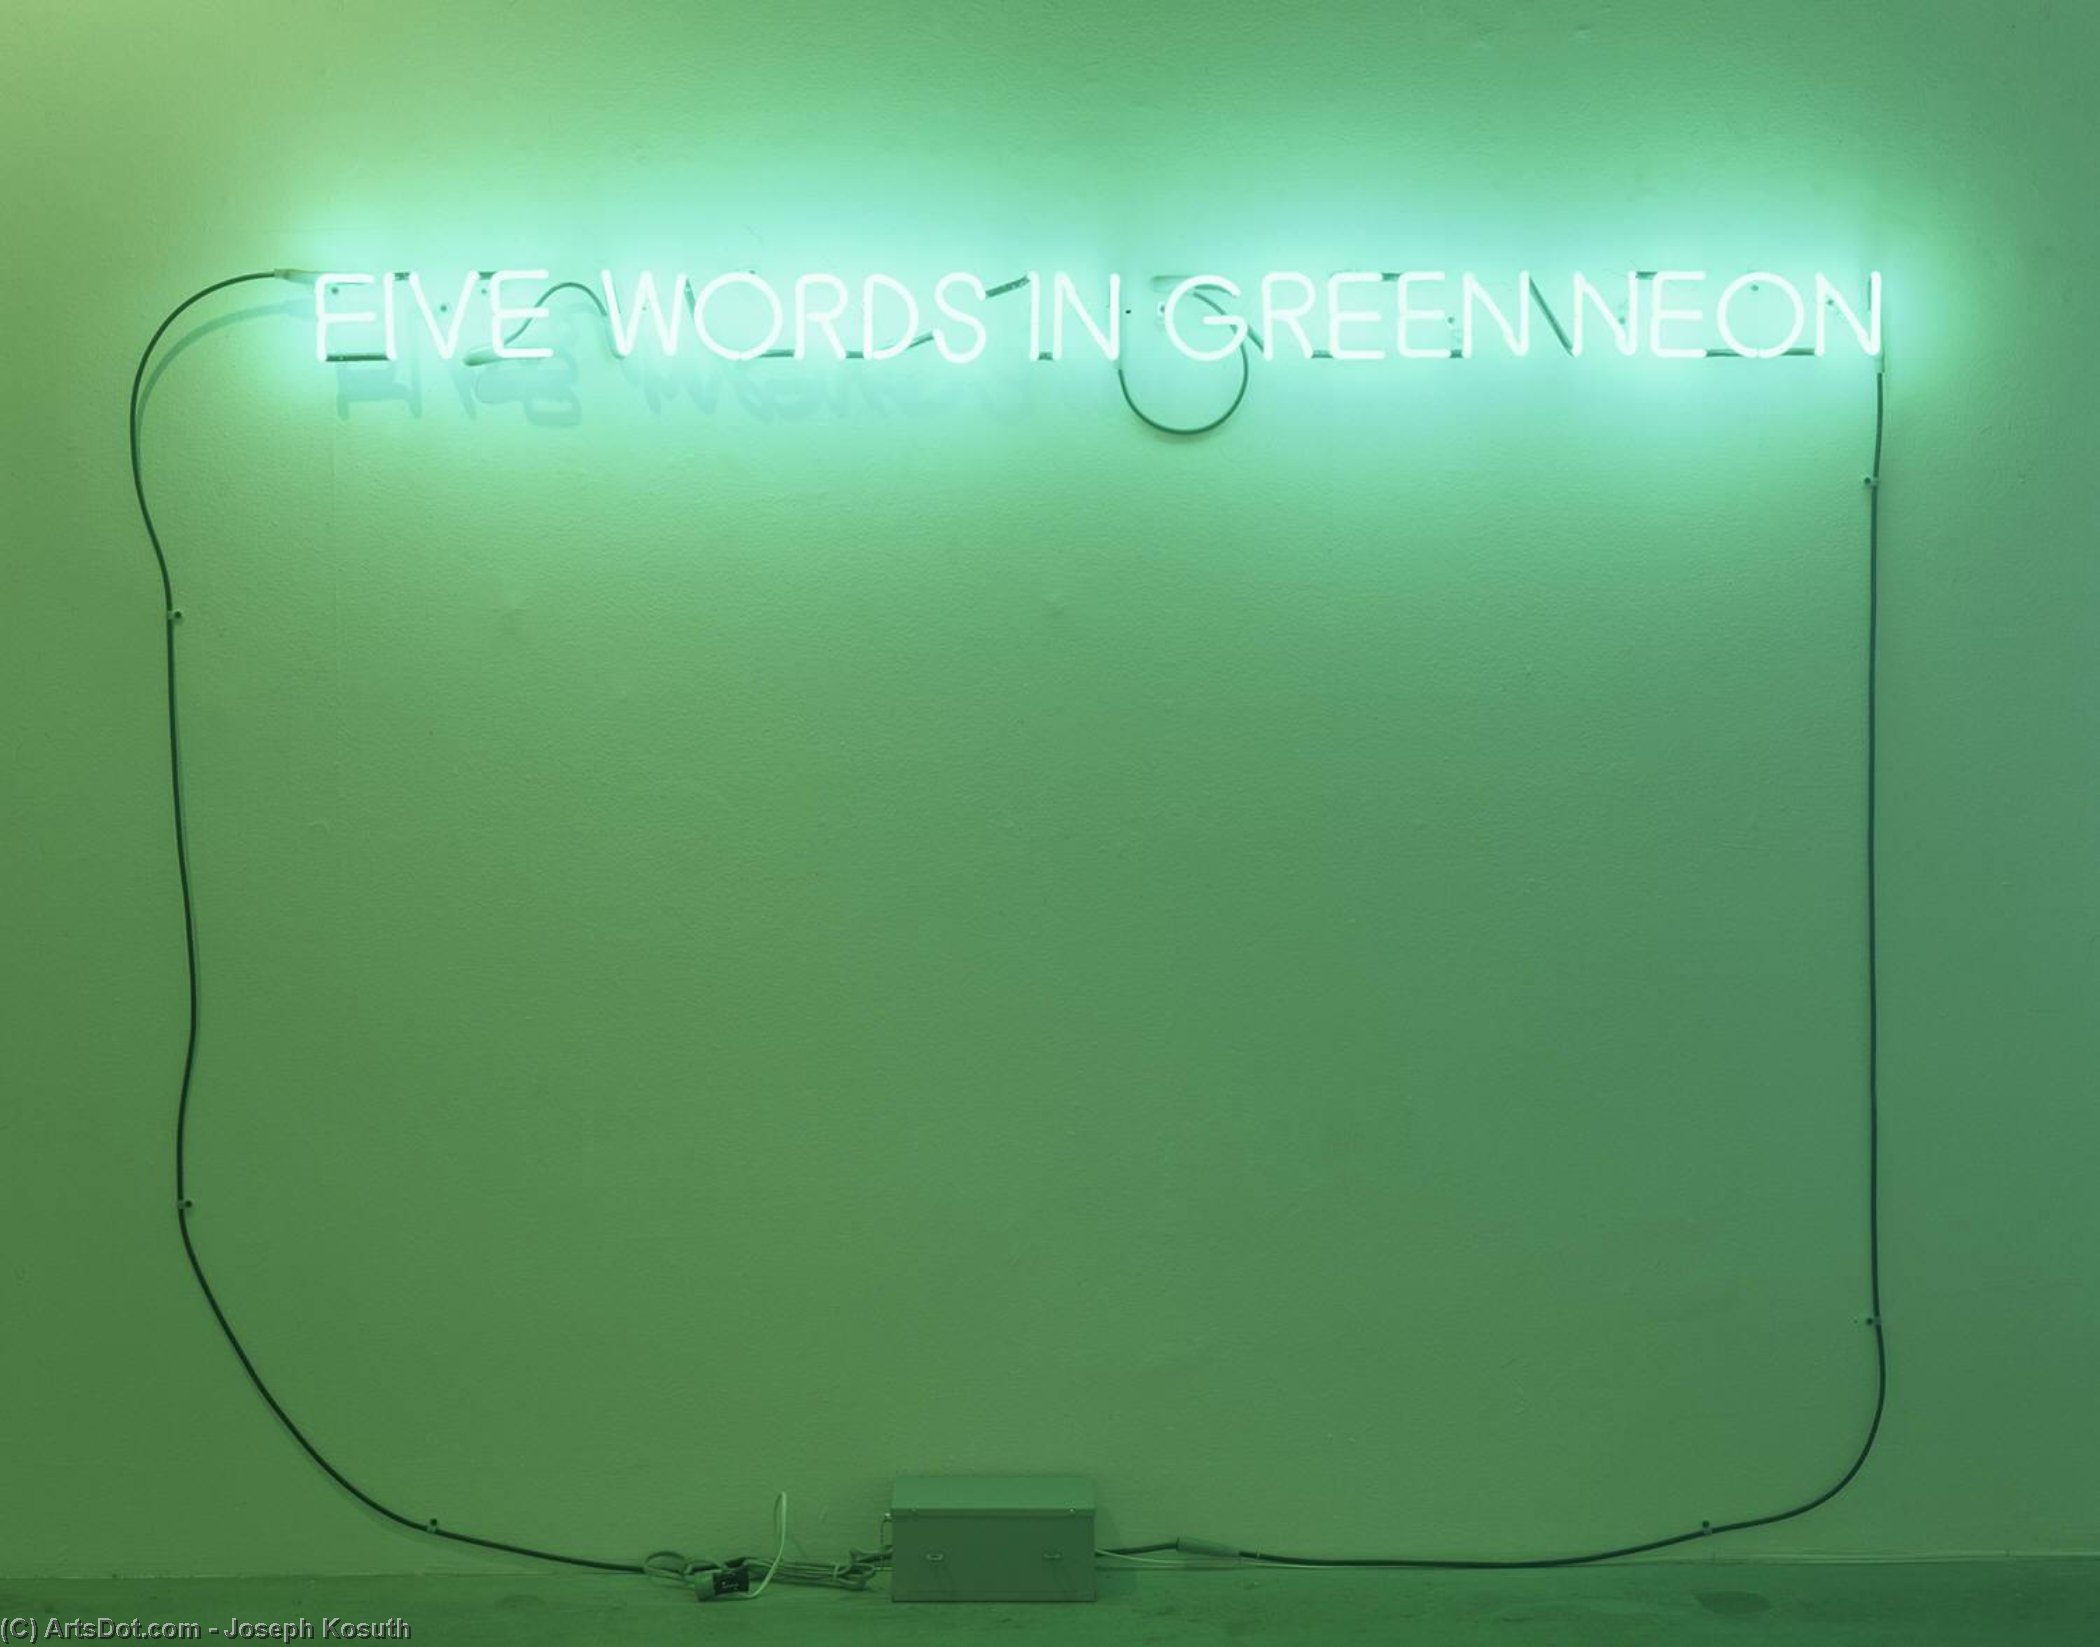 WikiOO.org - Енциклопедия за изящни изкуства - Живопис, Произведения на изкуството Joseph Kosuth - Five Words in Green Neon